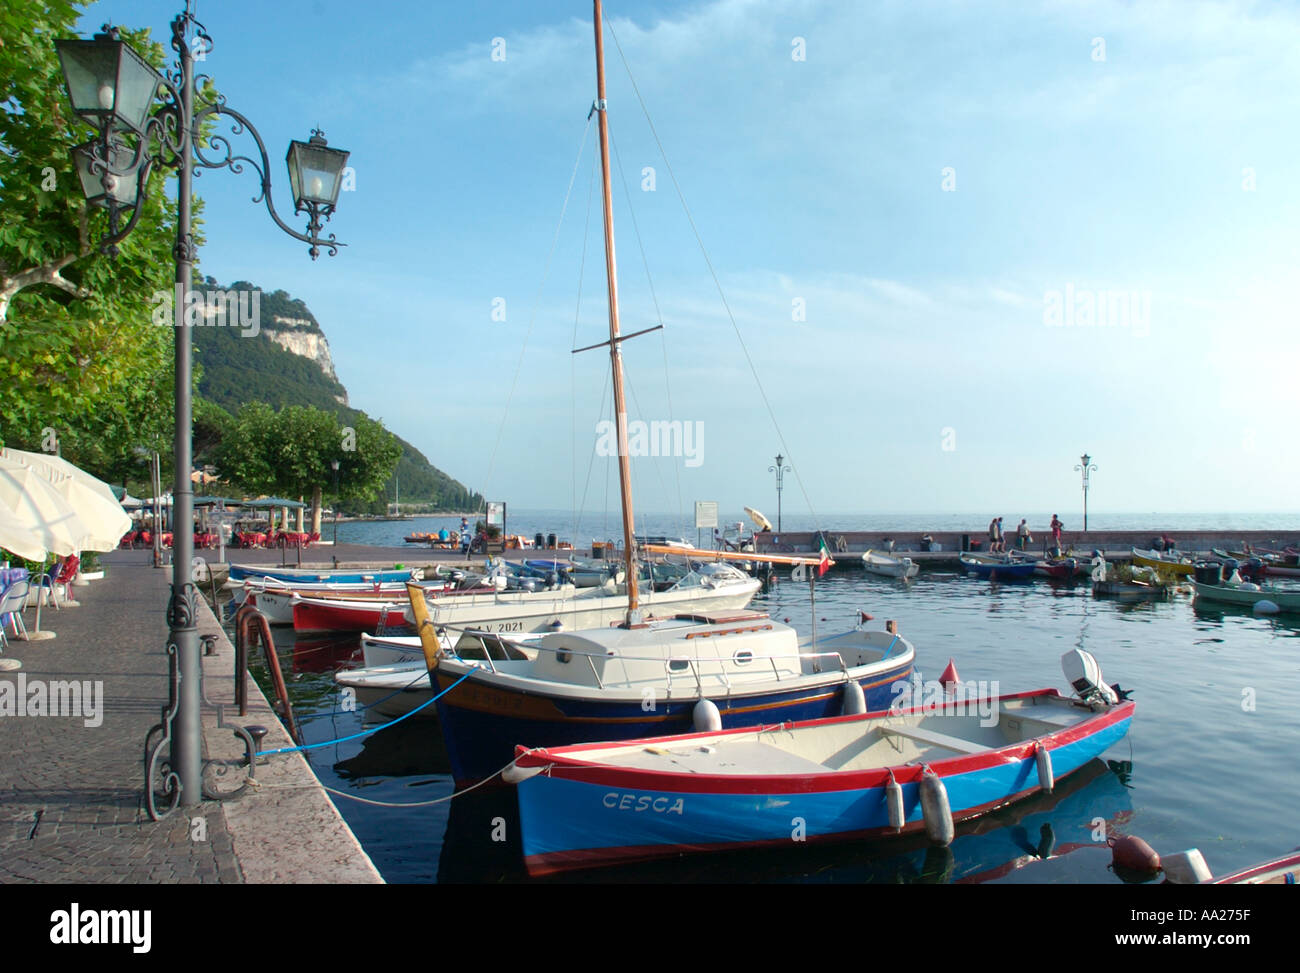 Le barche nel porto, Garda, il Lago di Garda, Italia Foto Stock